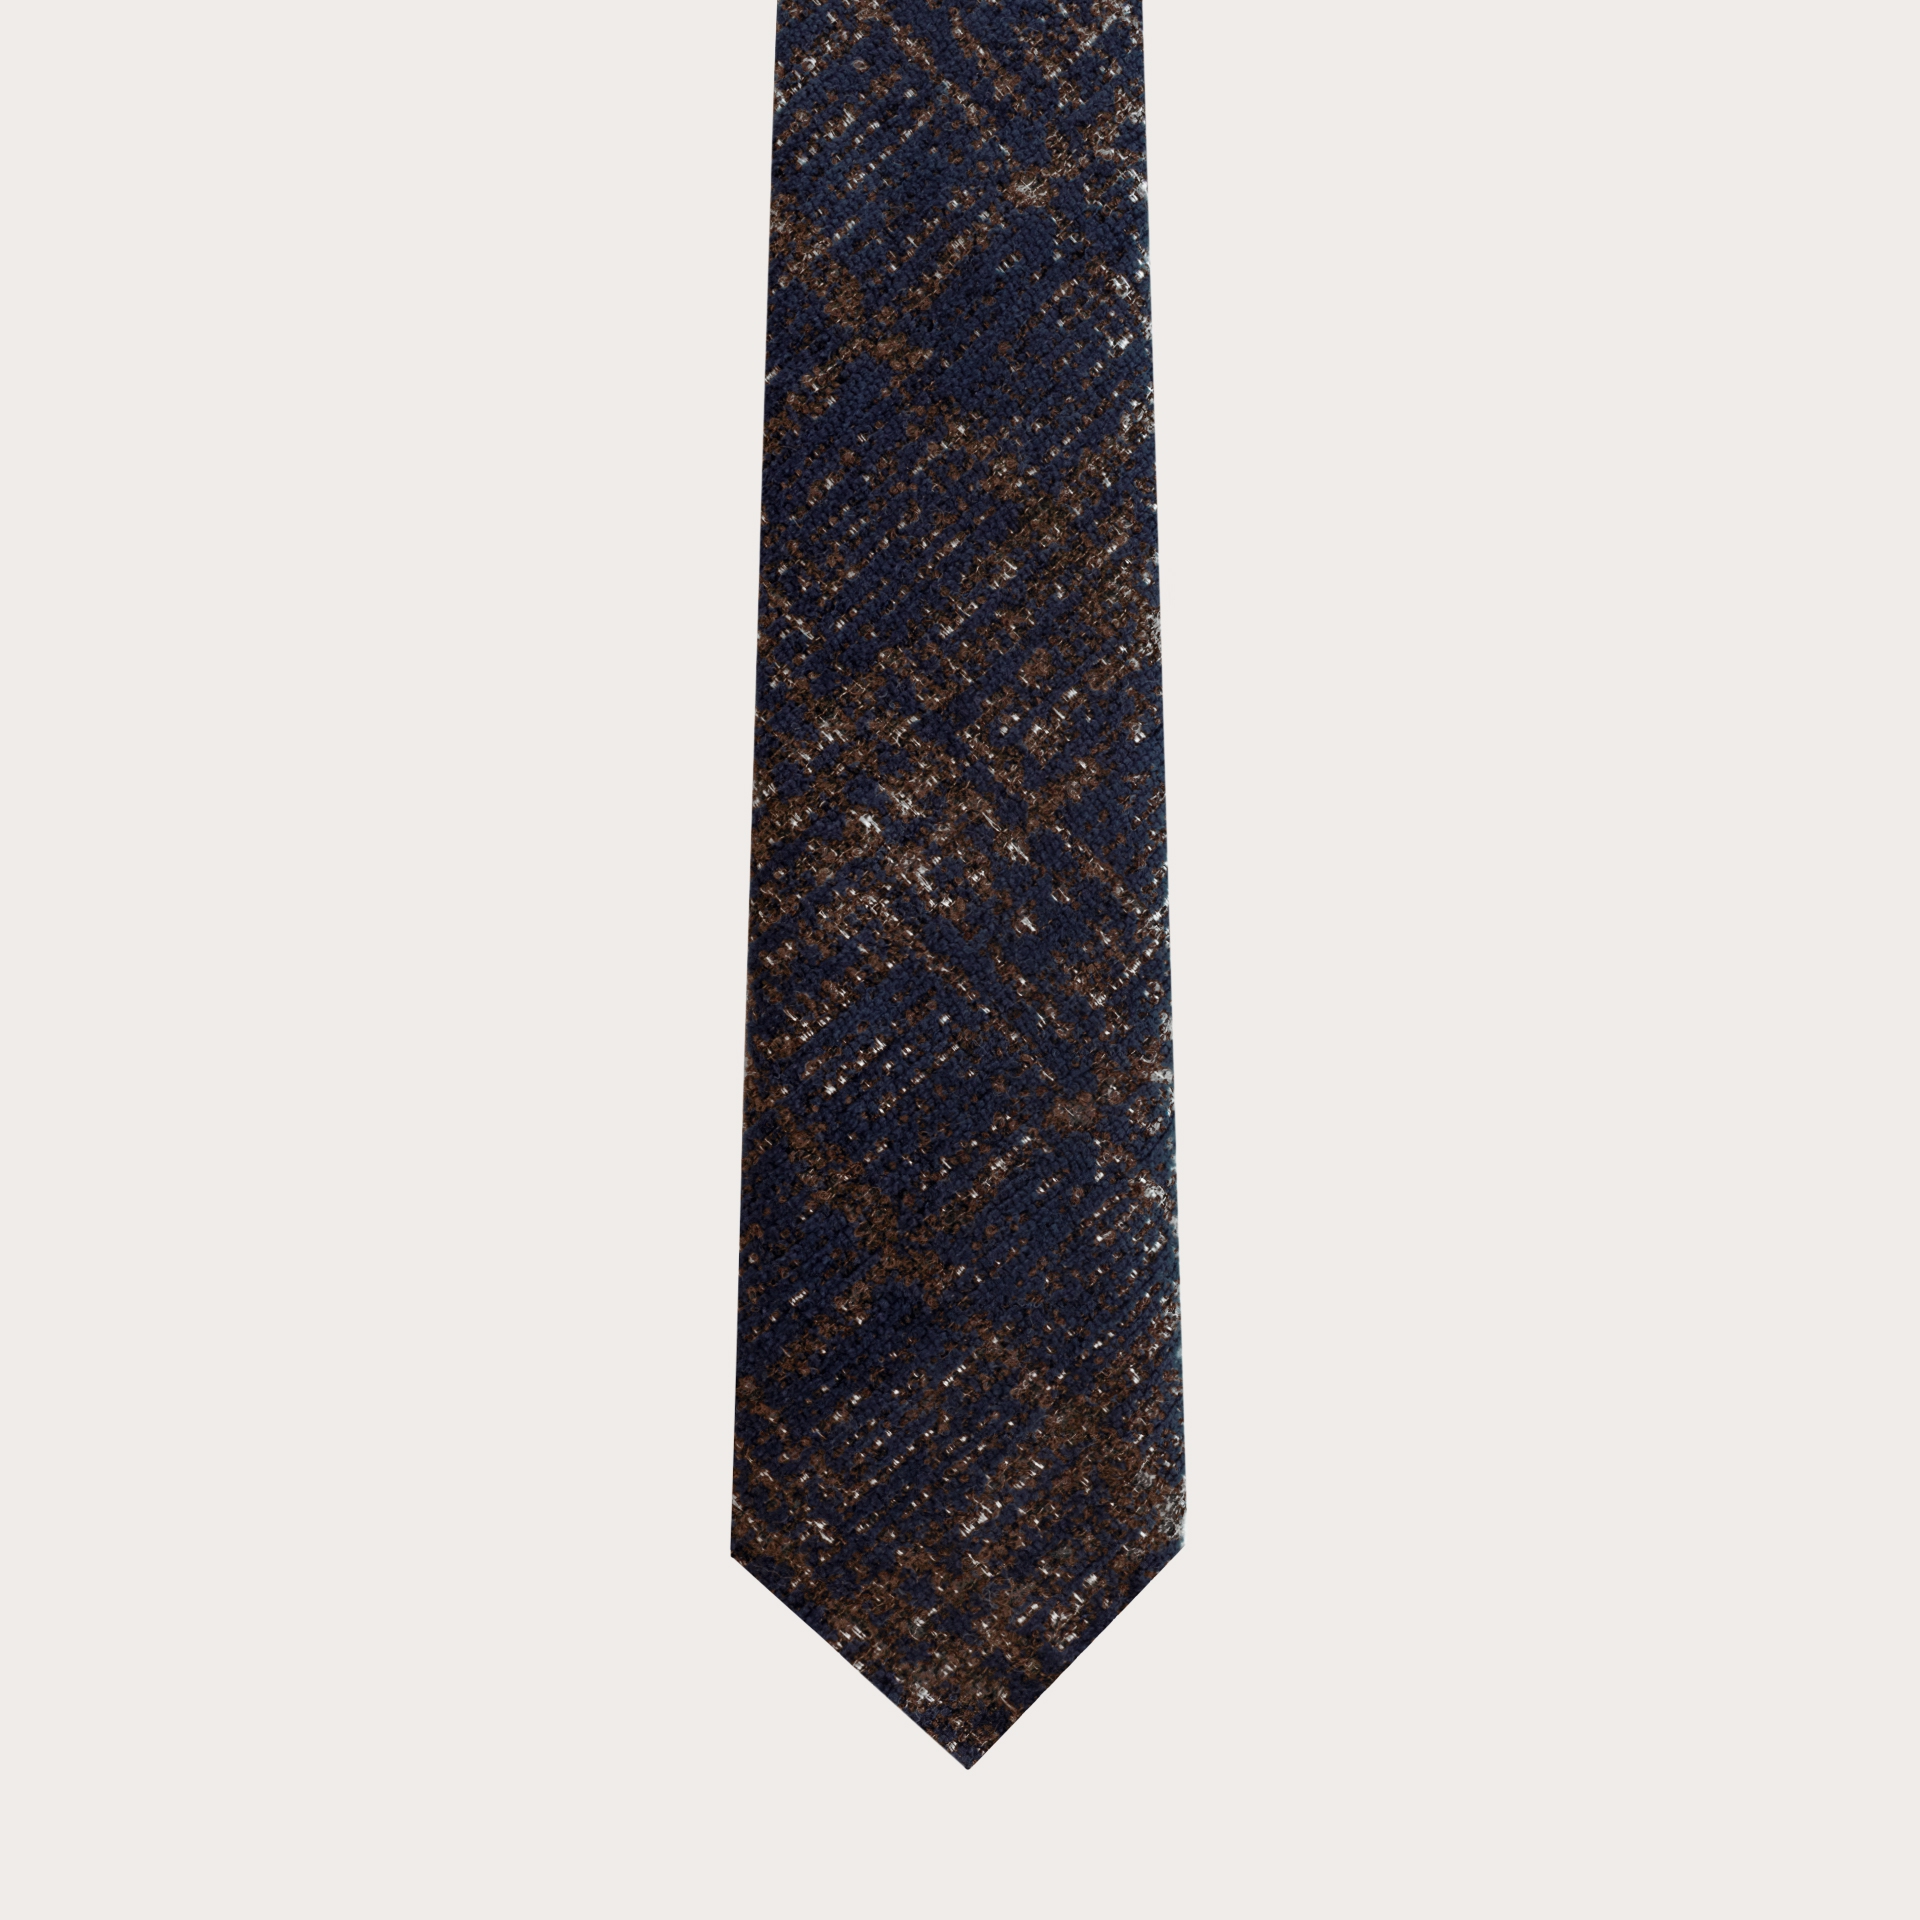 Cravate non doublée en laine et soie, tartan bleu et marron